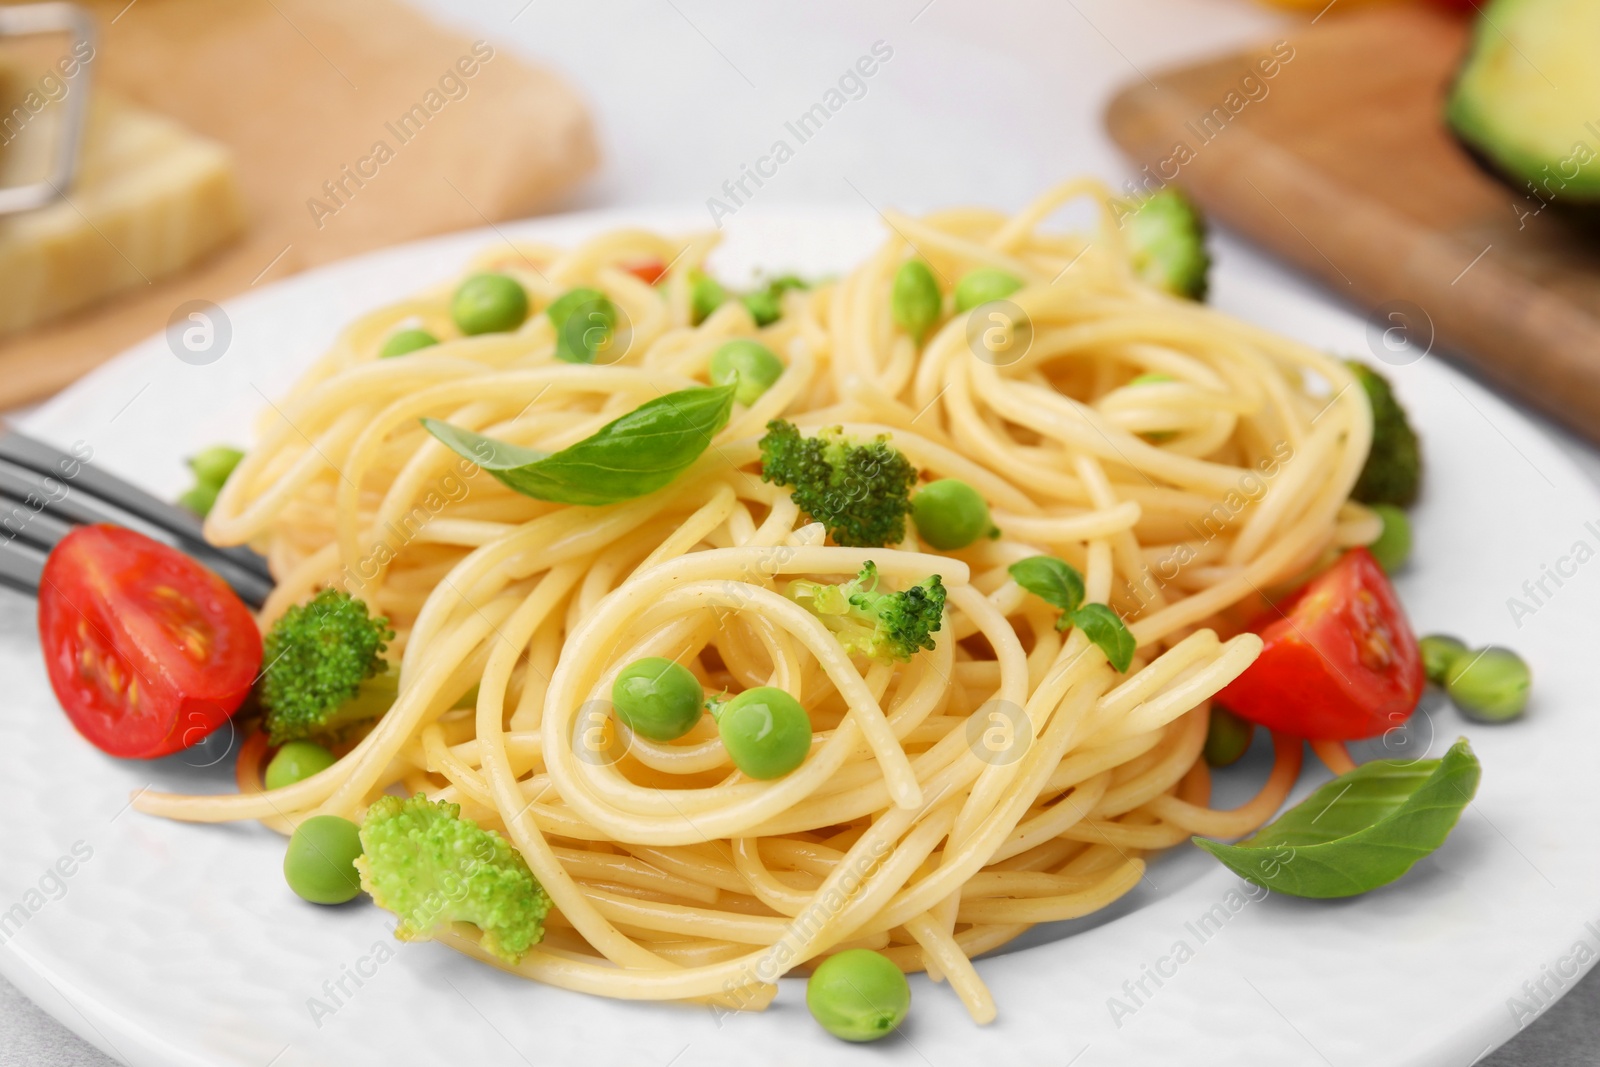 Photo of Plate of delicious pasta primavera, closeup view